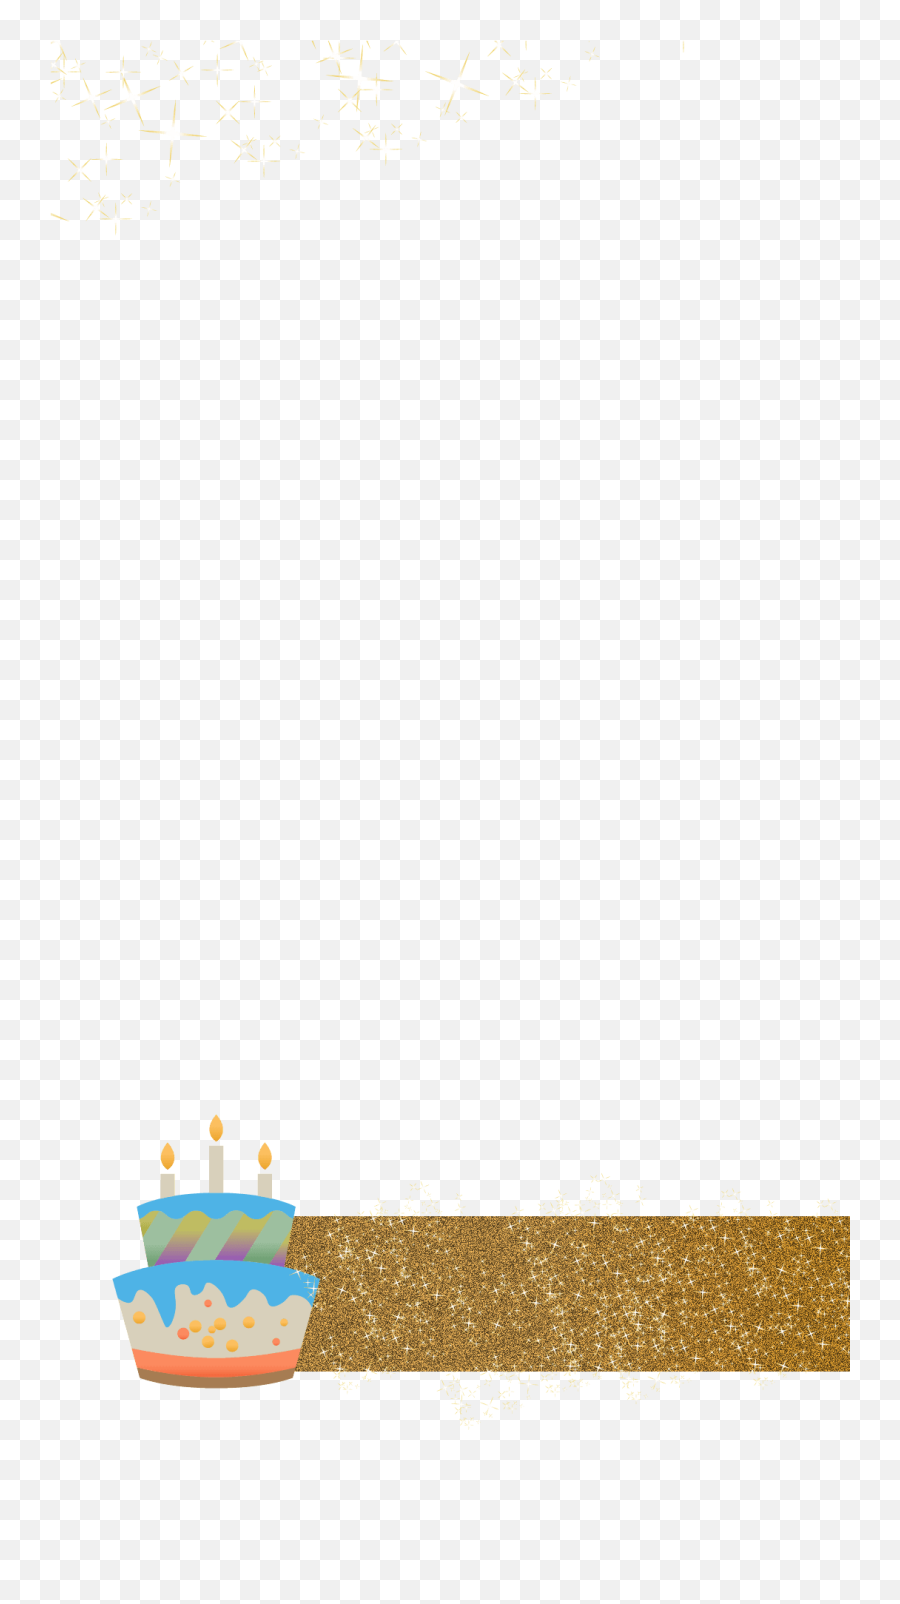 Gold Glittery Cake Birthday Snapchat - Birthday Cake Emoji,Birthday Cake Emoji On Snapchat